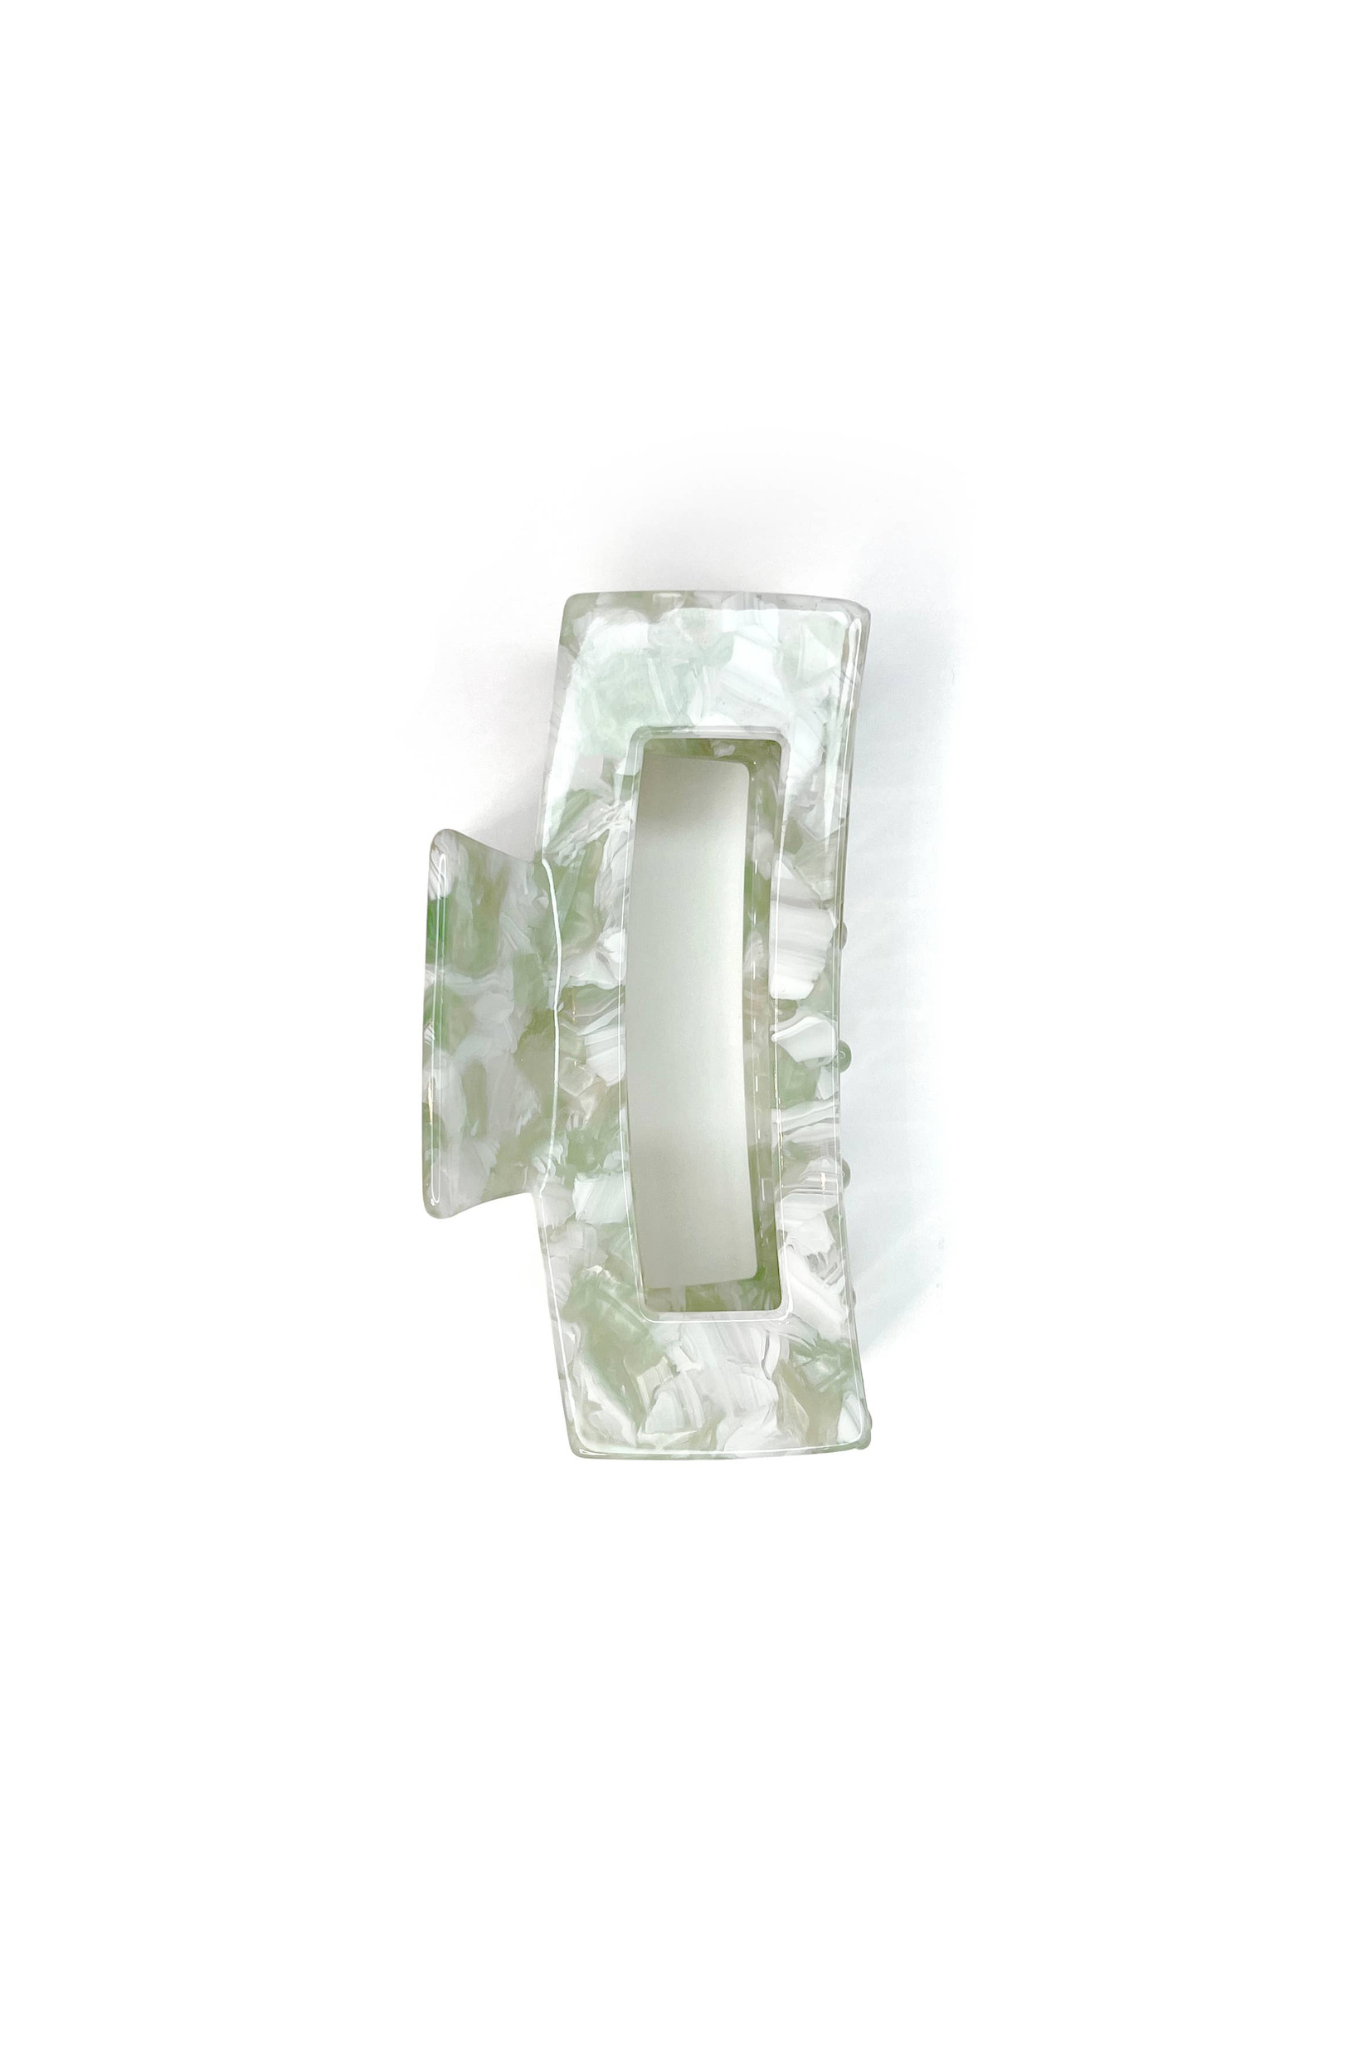 ESW Beauty - Eco-Friendly Mint Rectangular Claw Clip